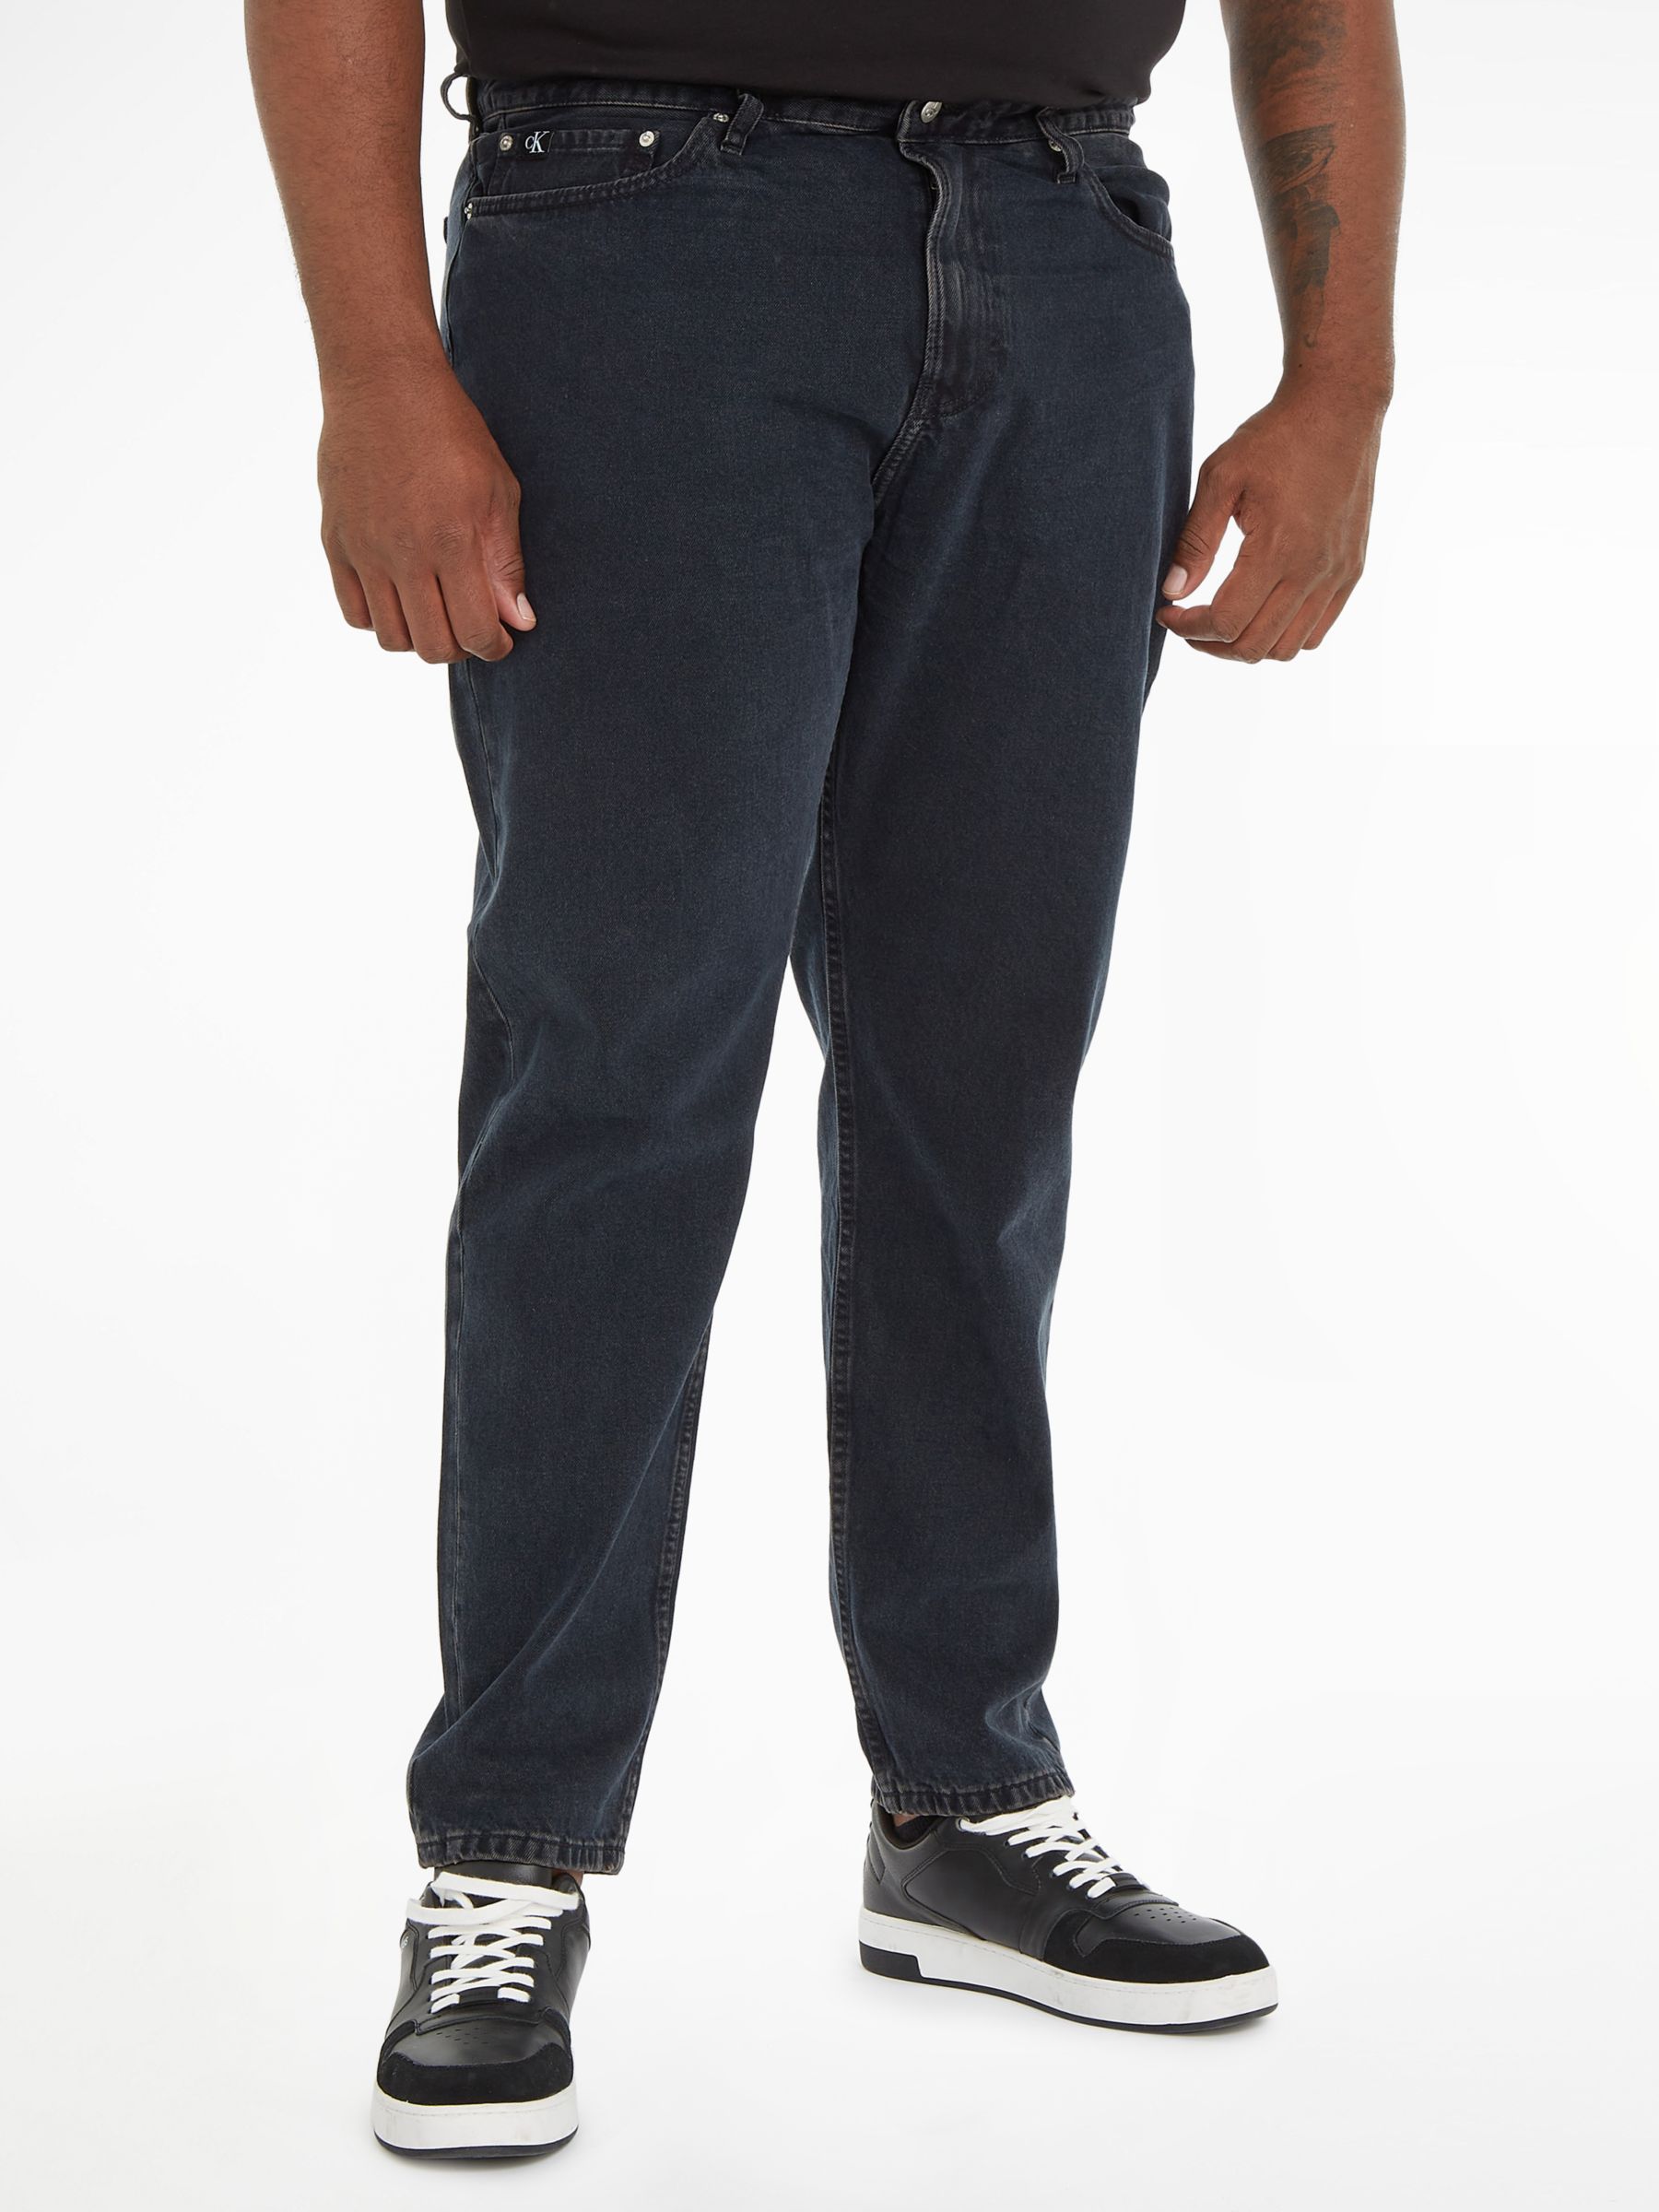 Calvin Klein Jeans Slim Tapered Jeans, Denim Grey, 28S